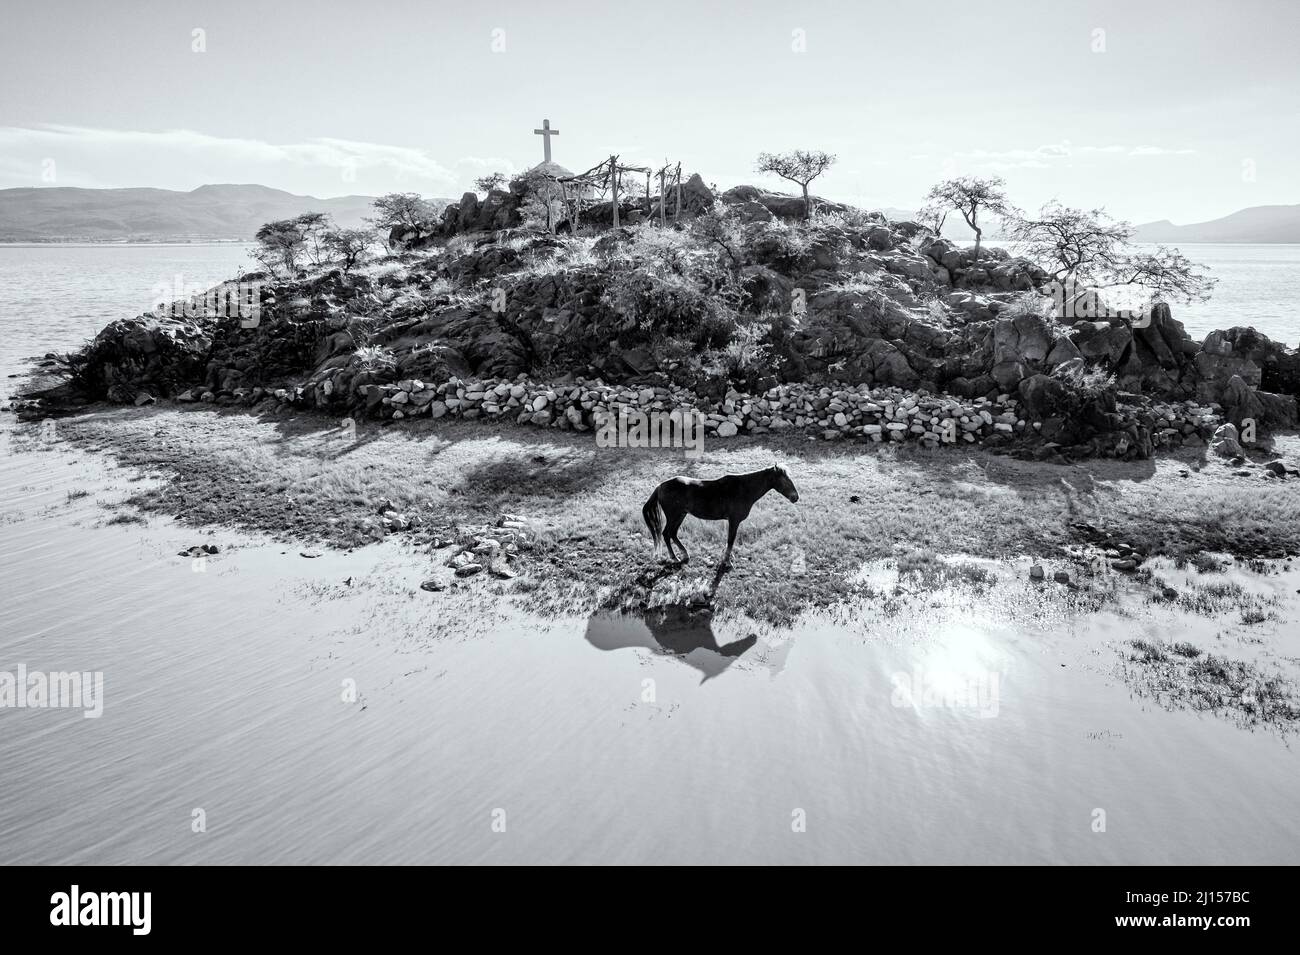 Immagine in bianco e nero di un cavallo su un'isola che ha un santuario per i pescatori, Lago Cuitzeo, Michoacan, Messico. Foto Stock